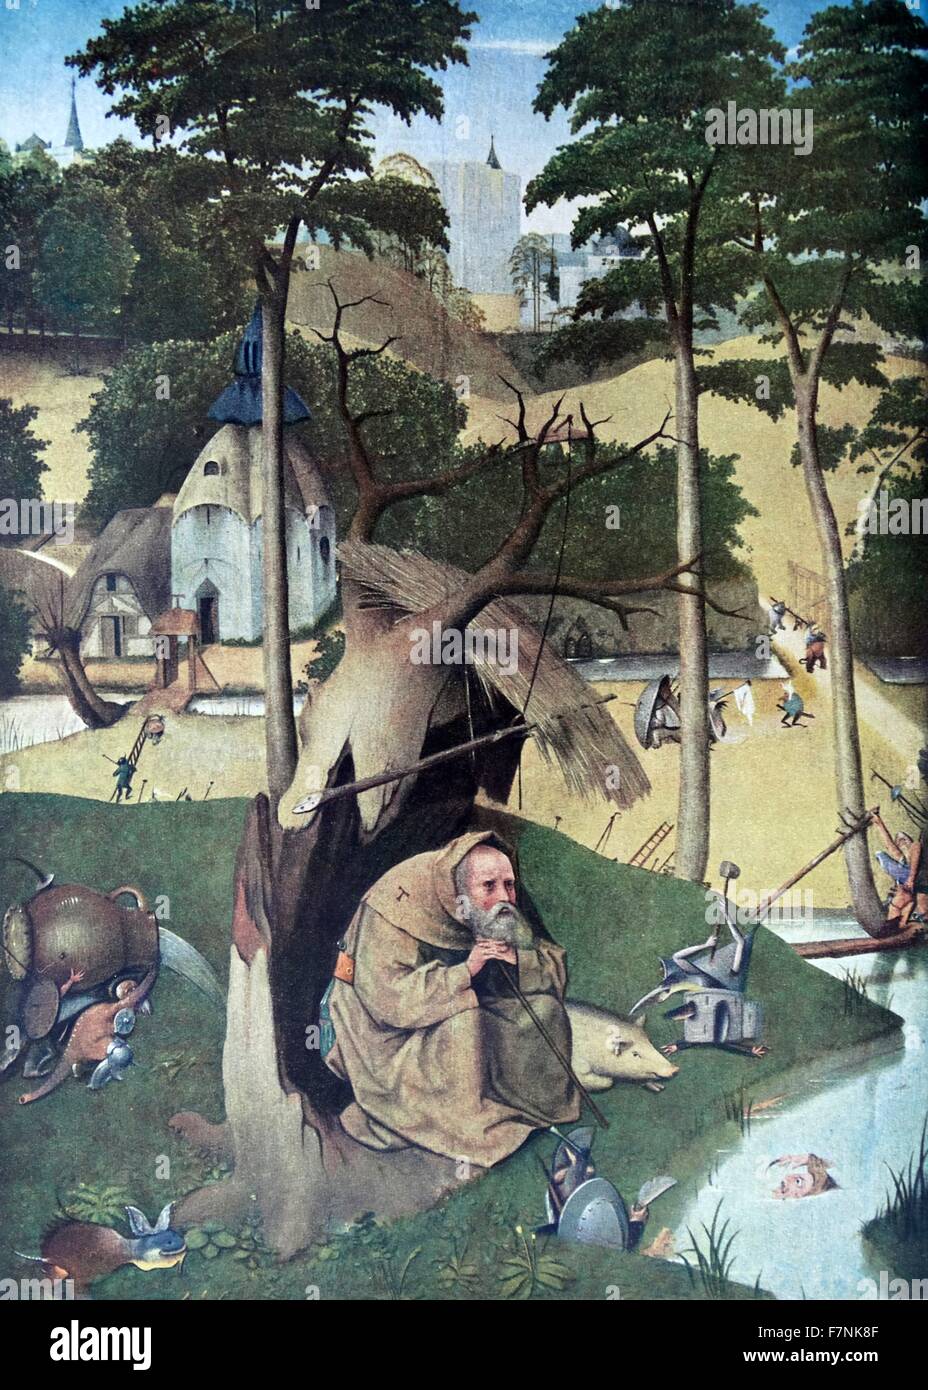 Détail de la 'Le Jardin des Délices' triptyque peint par le maître Russisch Début de Jérôme Bosch. Création : 1503-1504 Banque D'Images